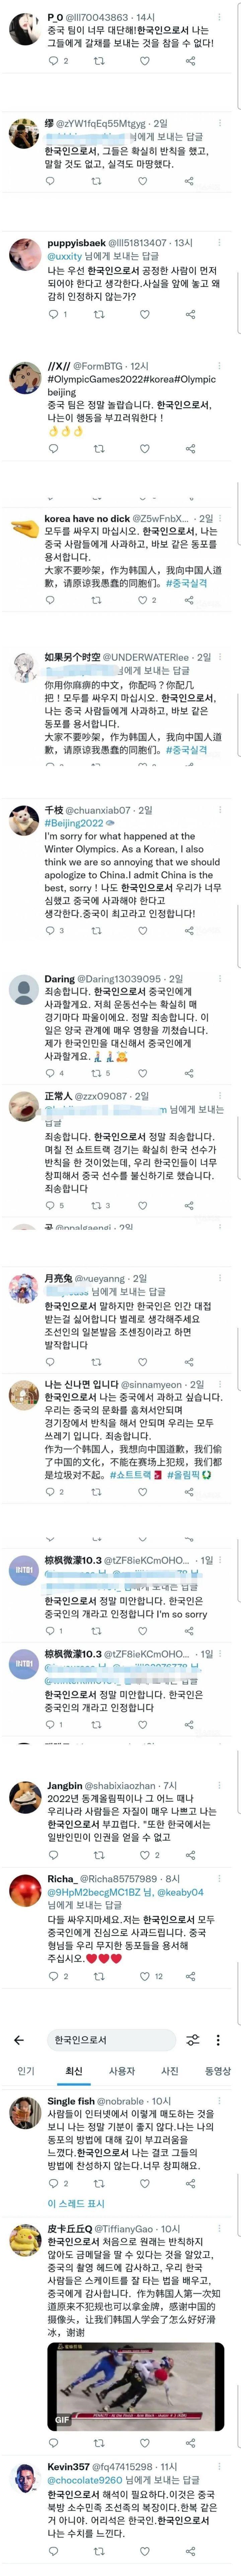 트위터에"한국인으로서"라고 검색해보면 나오는것